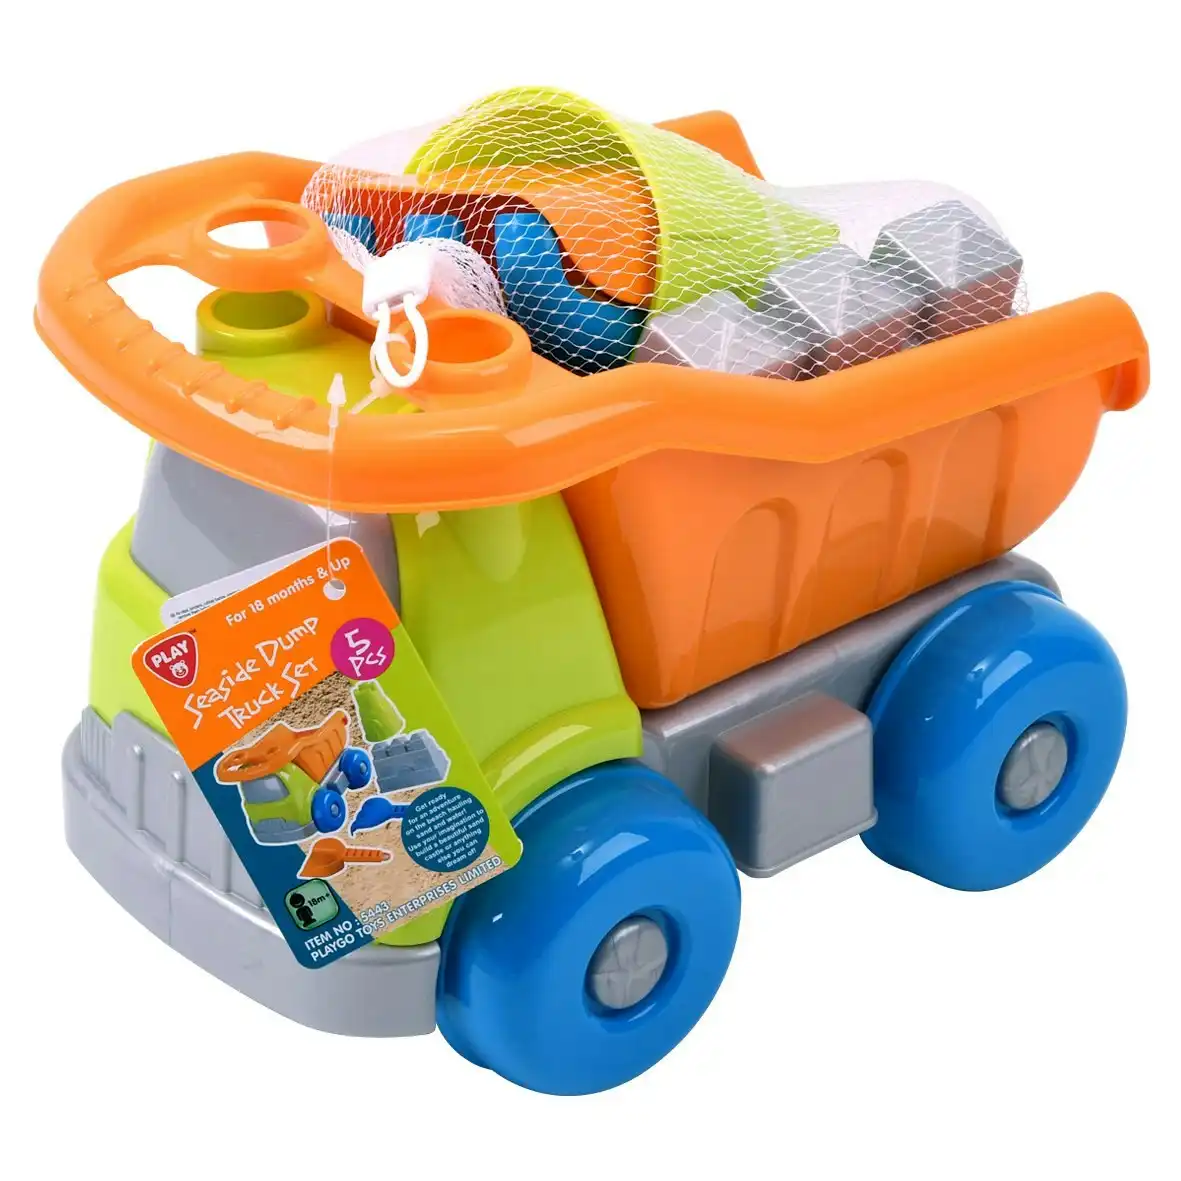 Playgo Toys Ent. Ltd. - Seaside Dump Truck Set